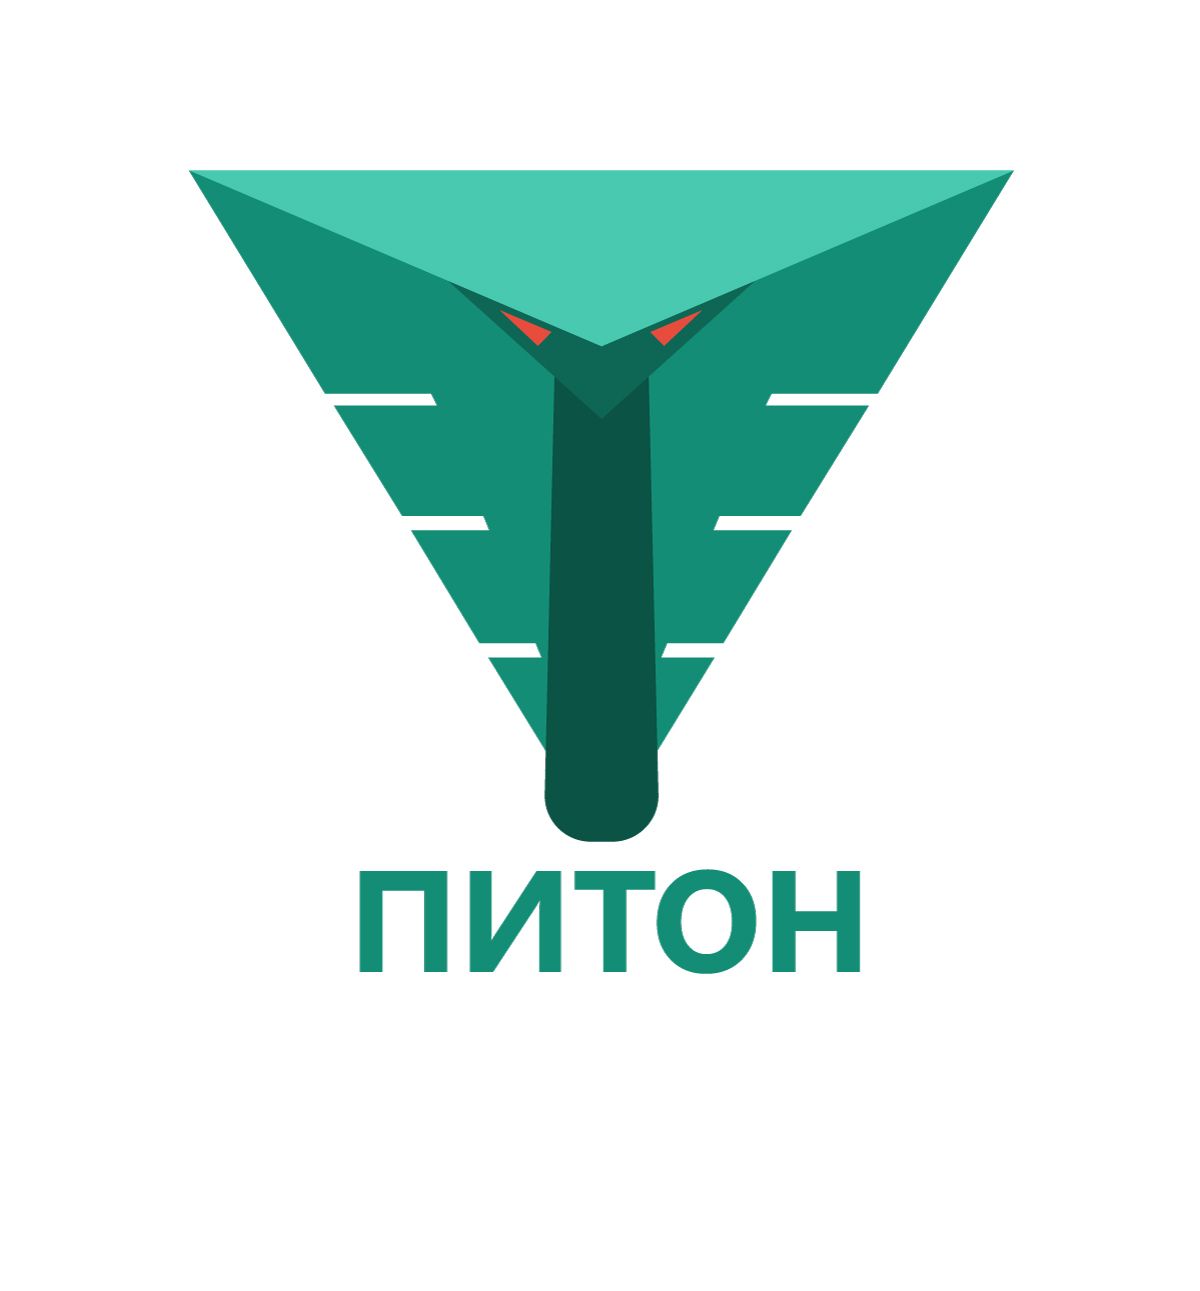 Логотип для производителя PITON / ПИТОН - дизайнер Minskach